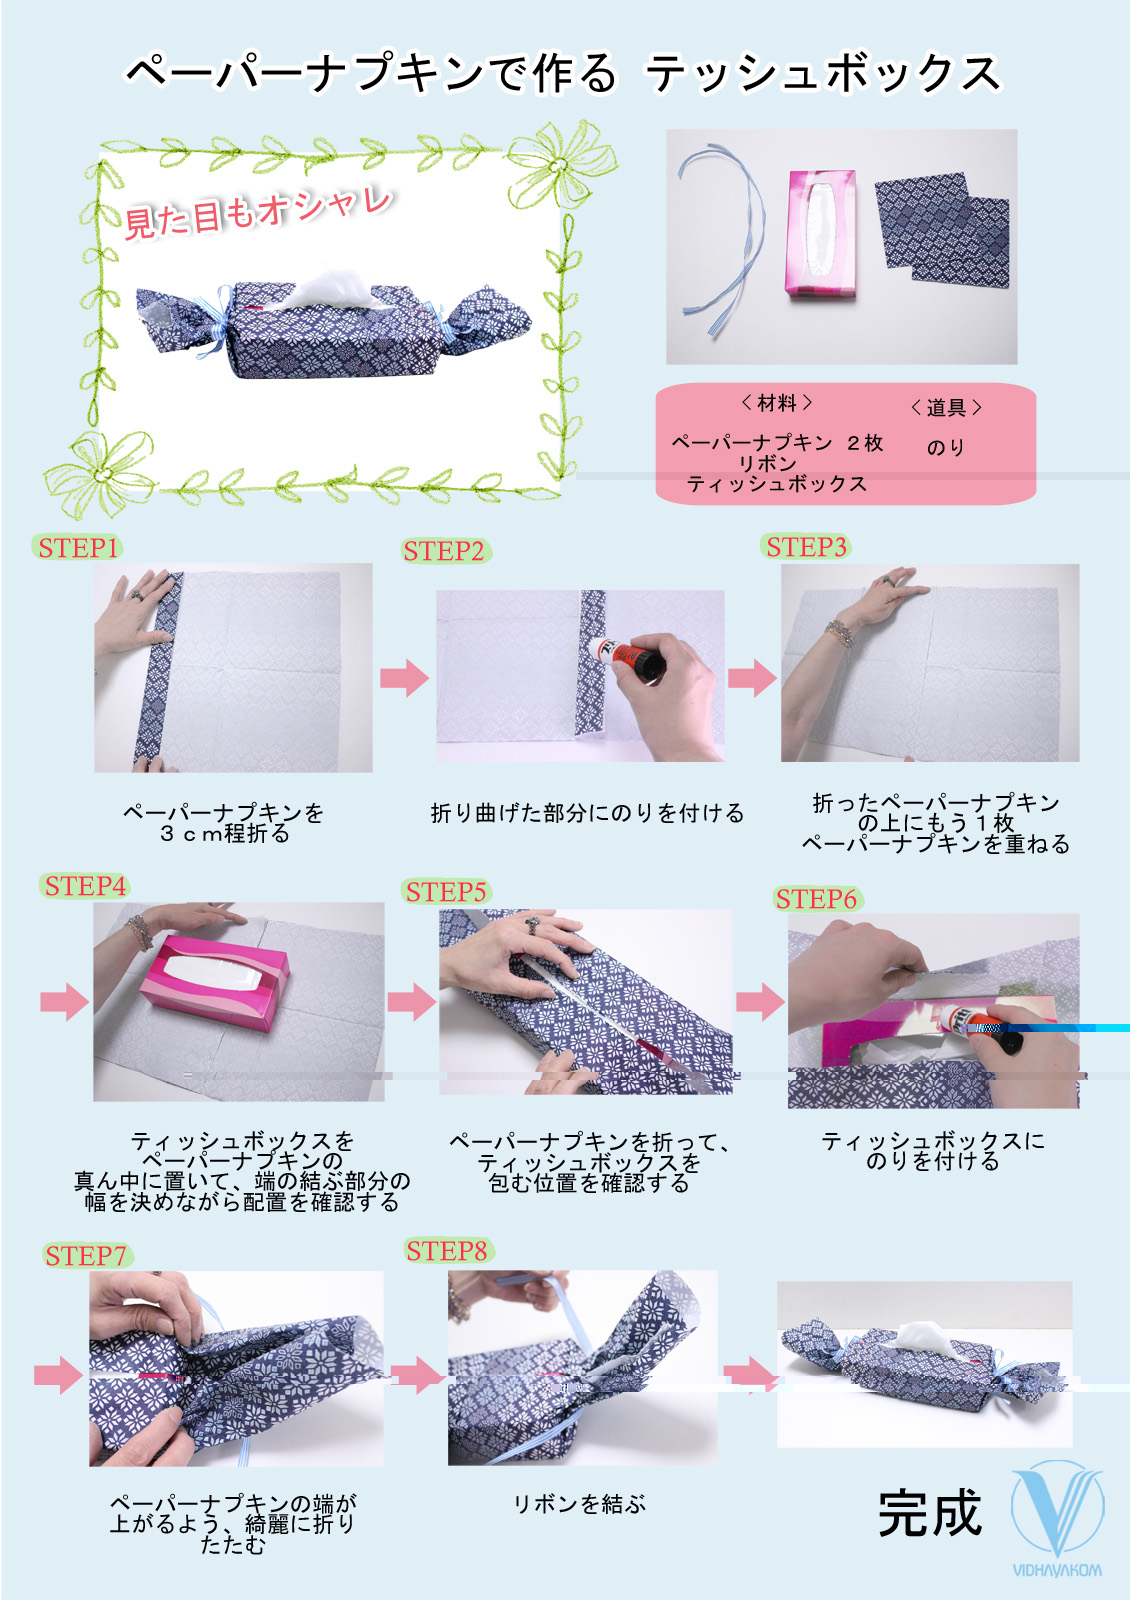 ペーパーナプキンの使いかた 日本ビダヤコム株式会社 Page 2